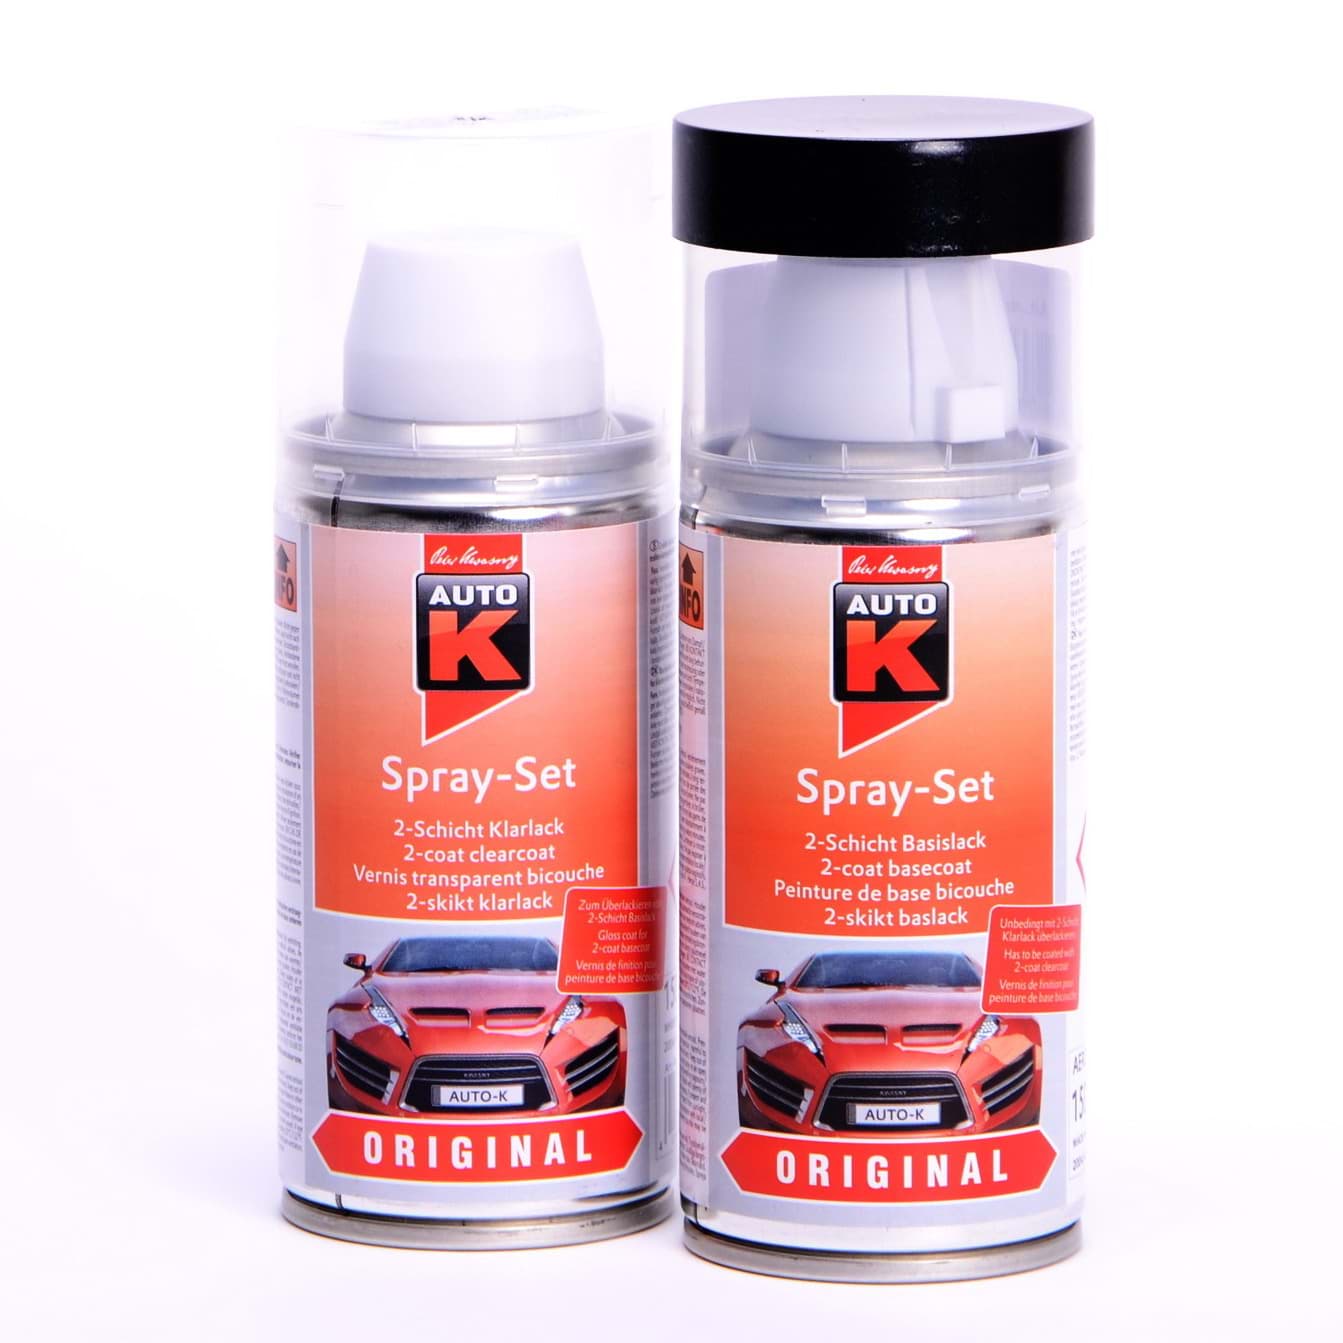 Afbeelding van Auto-K Spray-Set Autolack für Renault 630 Gris Xerus met 43396